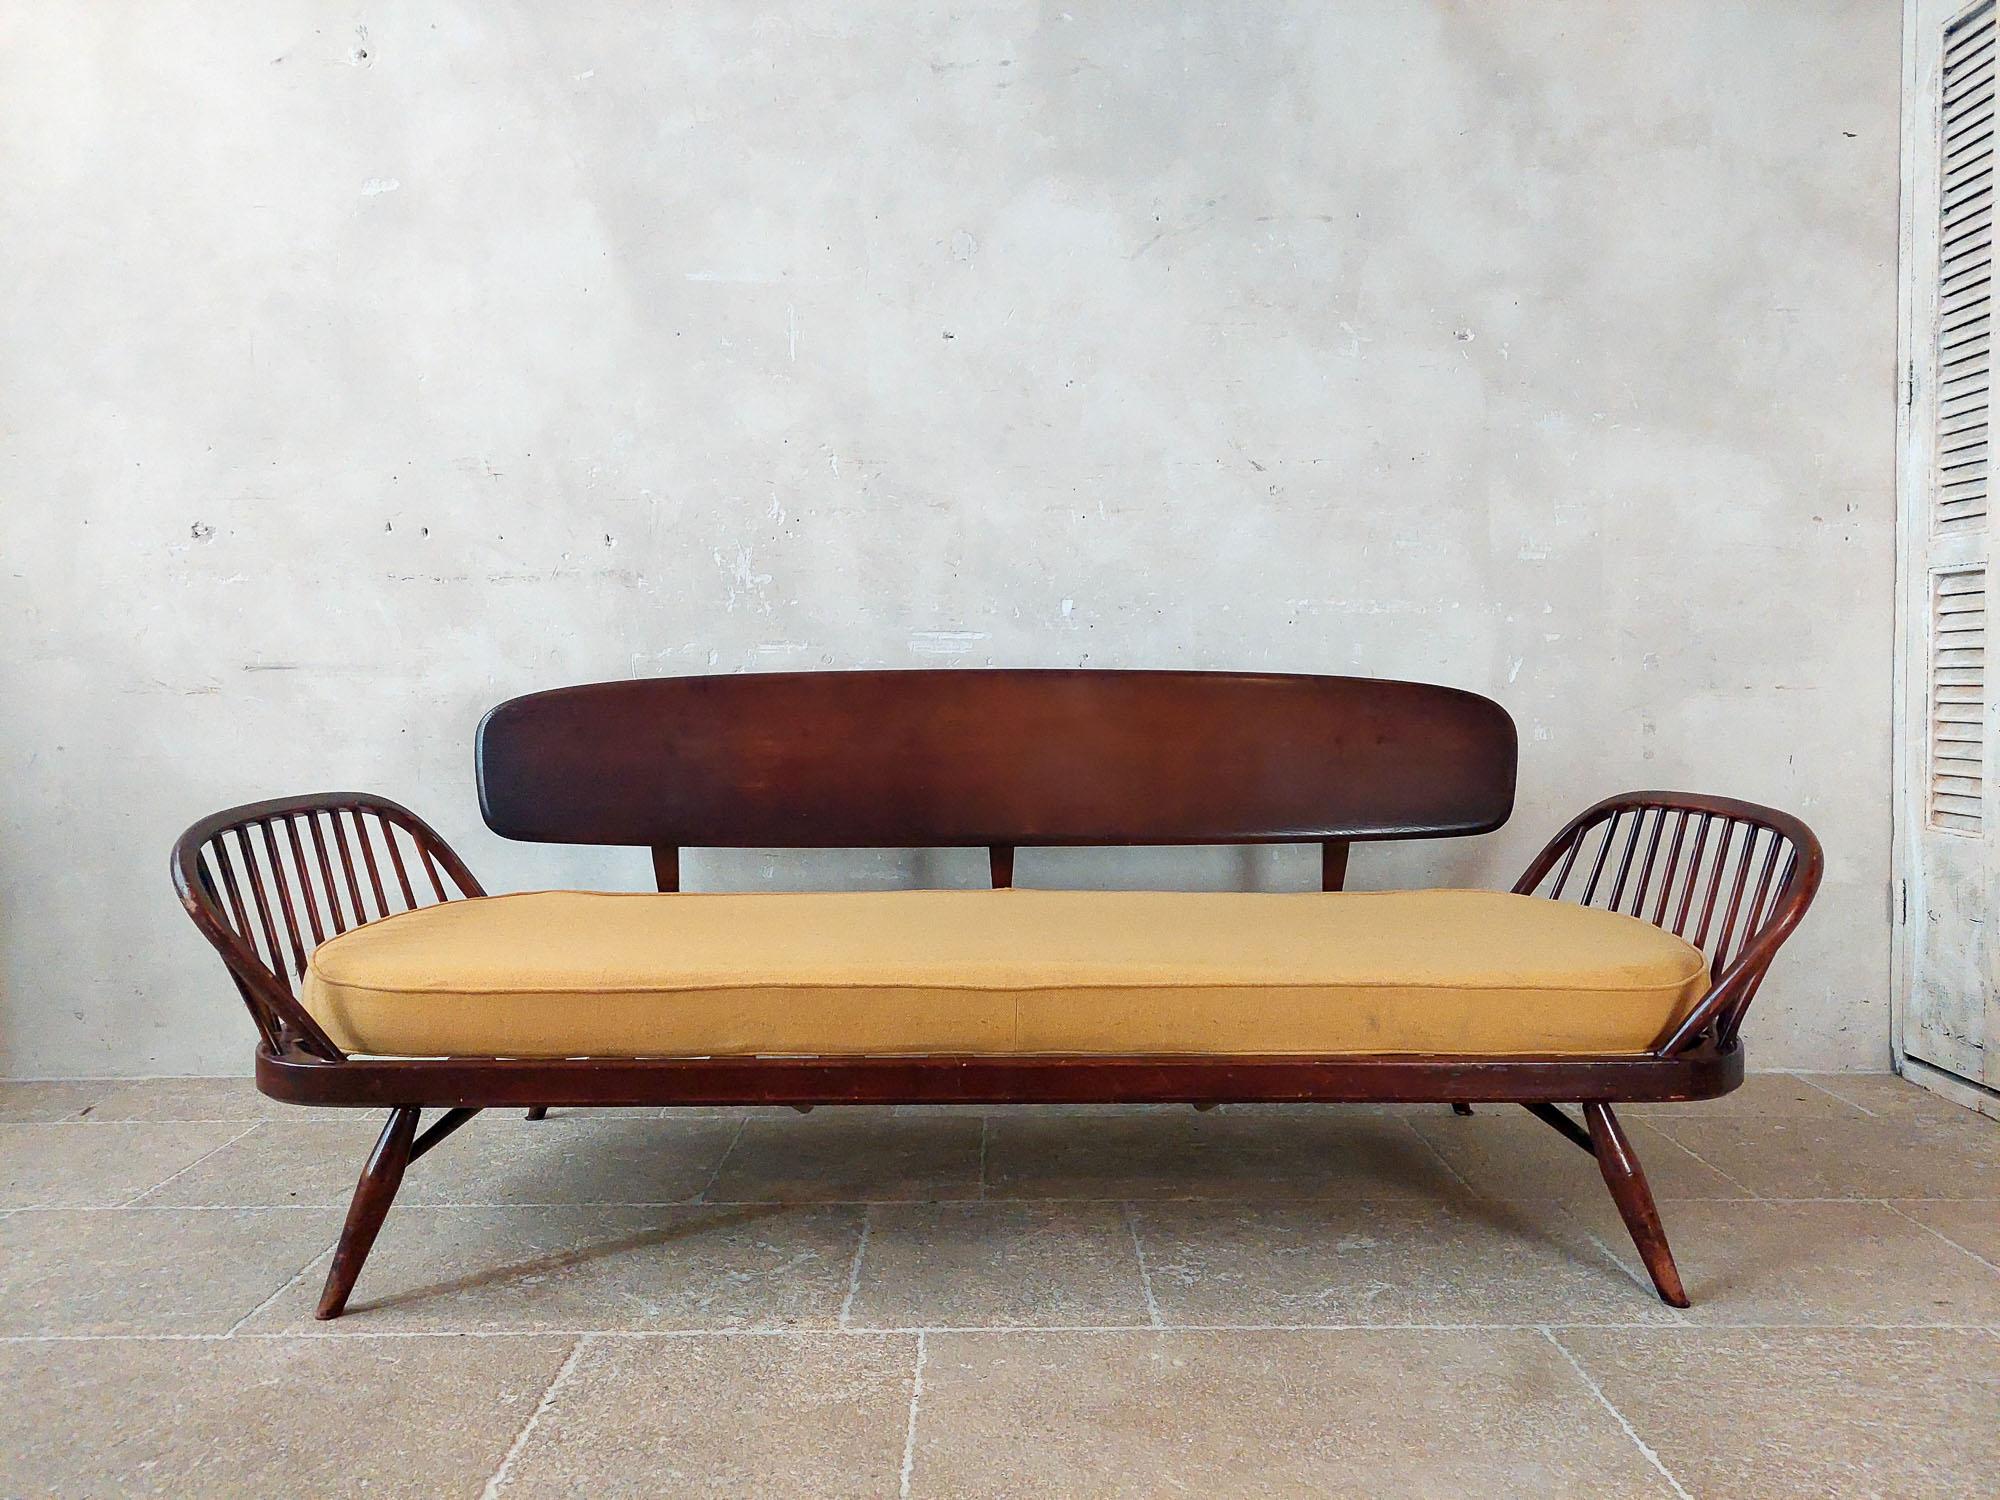 Ercol Sofa (Studio Couch) aus der Mitte des Jahrhunderts, entworfen von Lucian Ercolani in den 1960er Jahren.

Der Rahmen und die Rückenlehne des Sofas sind aus massivem Ulmenholz gefertigt. Die Rückenlehne ist leicht abnehmbar, so dass Sie dieses